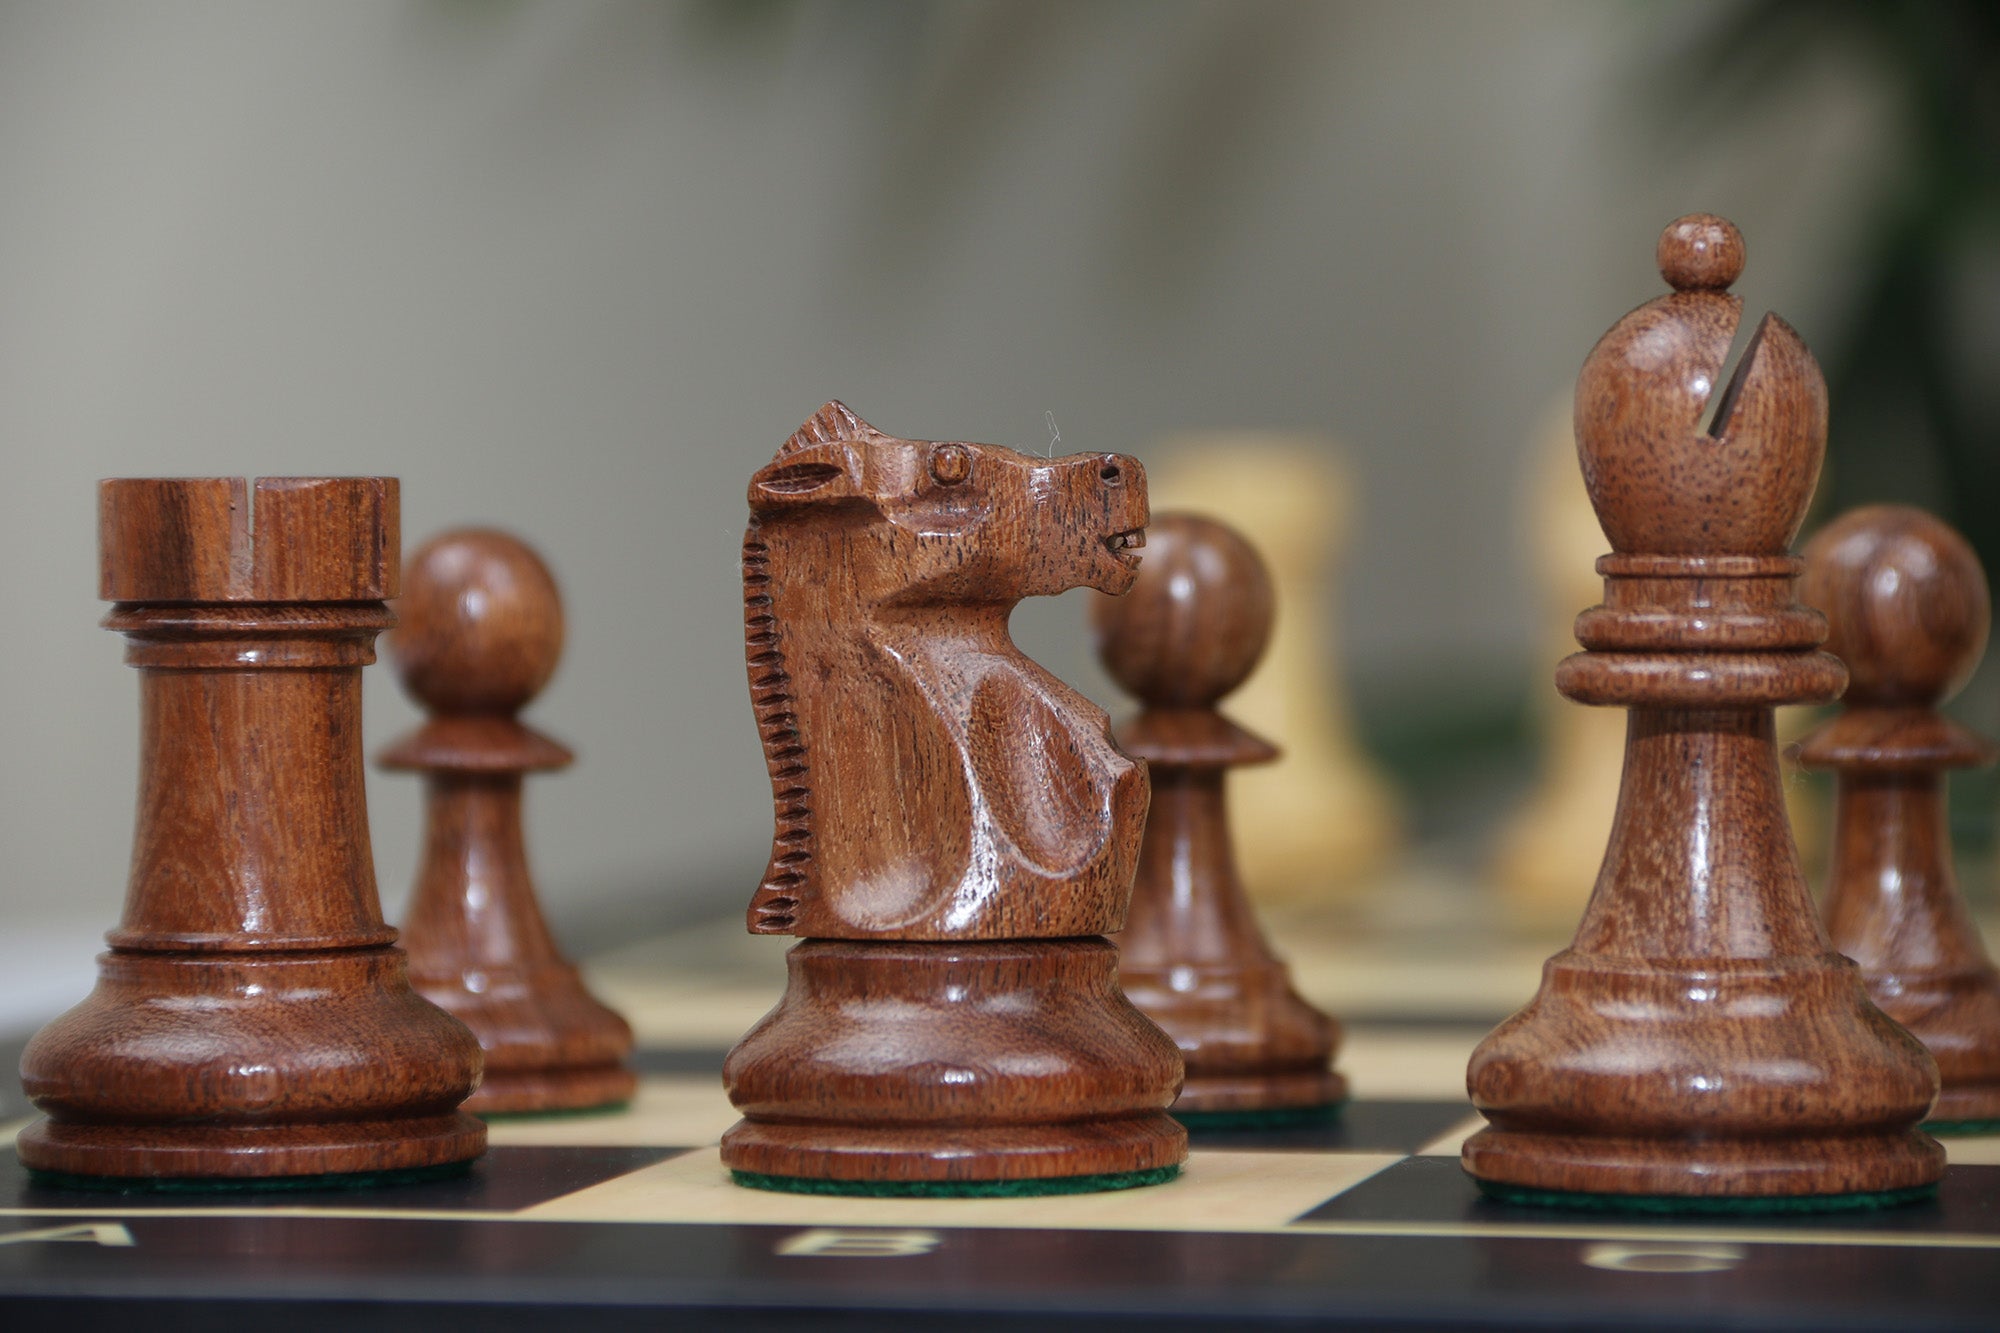 Fischer-Spassky / 1972 World Championship 3.75" Acacia Chessmen